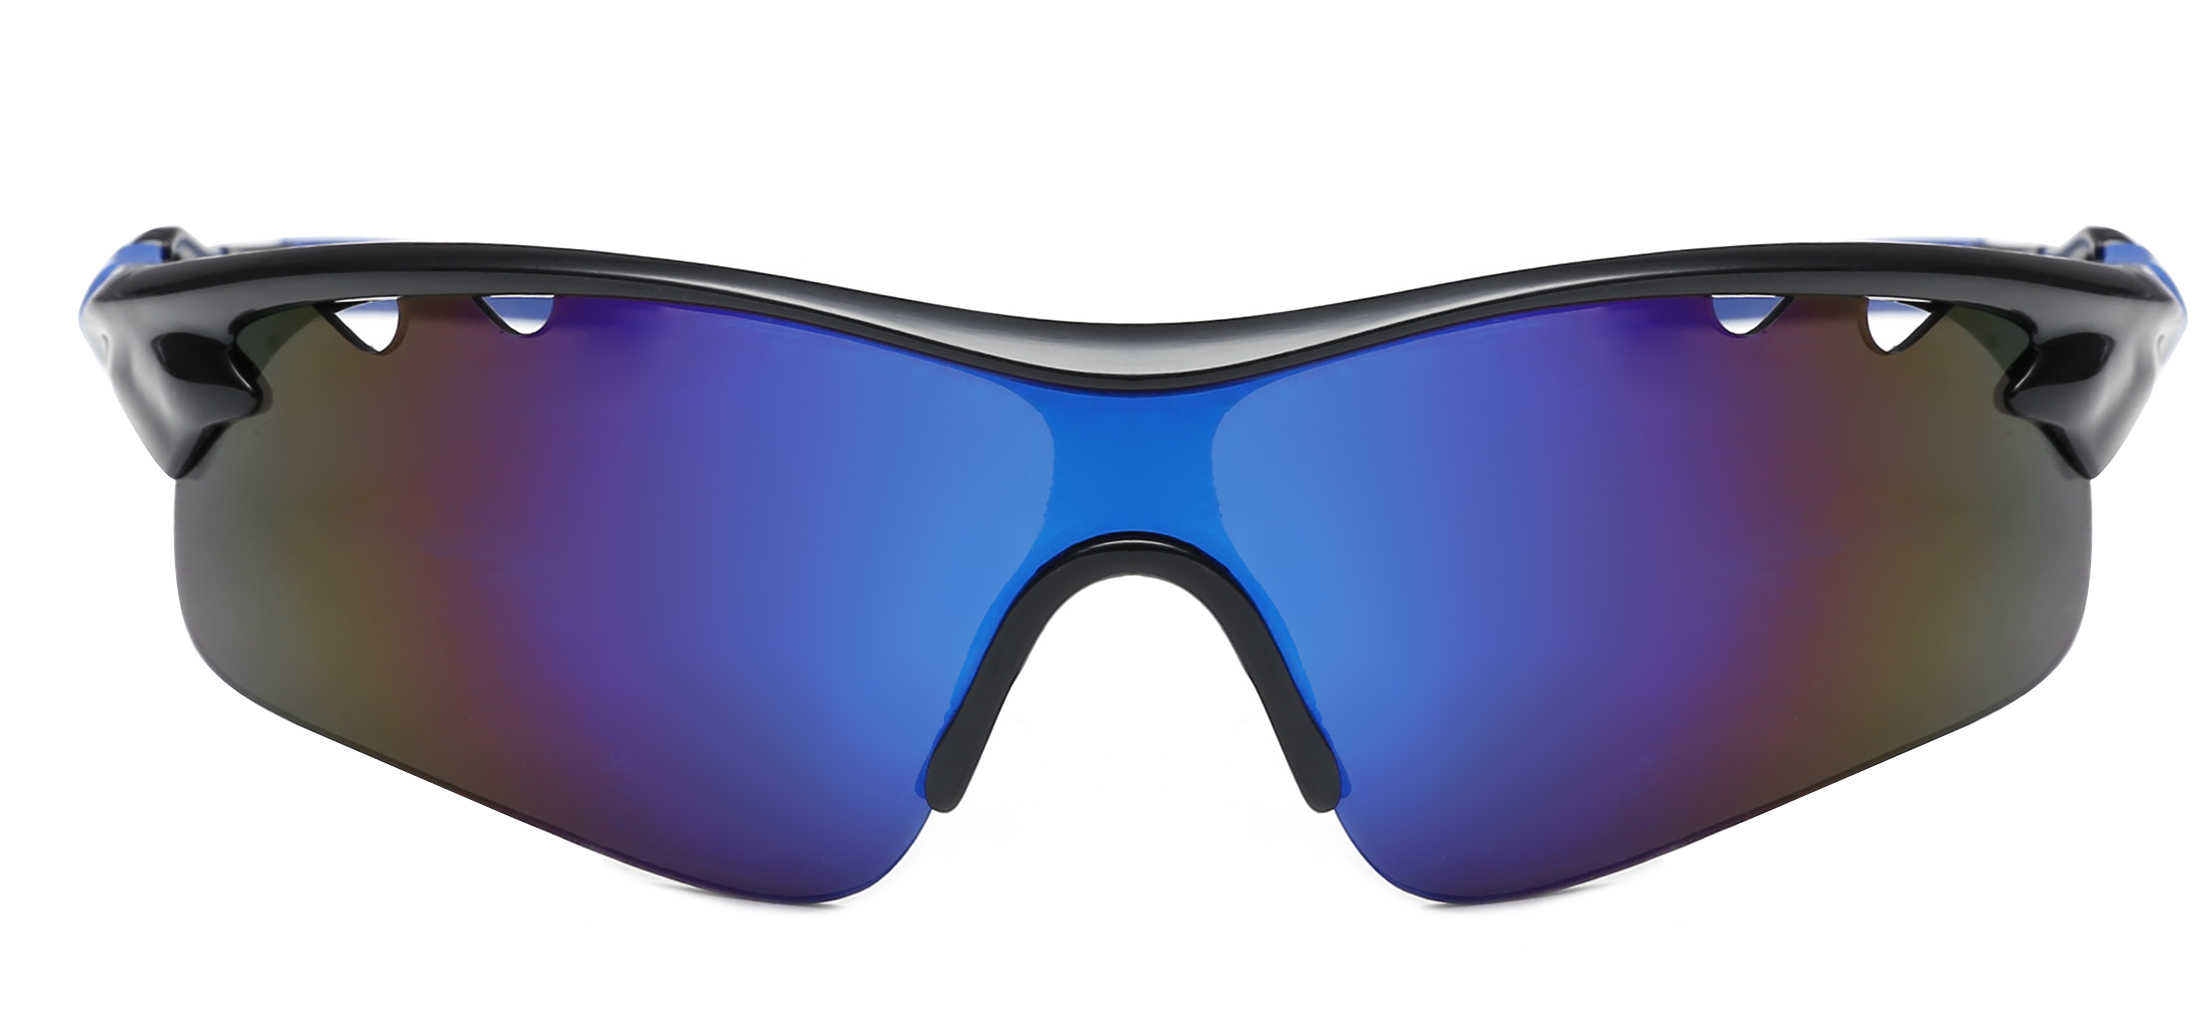 POSMA SGS009 運動偏光太陽眼鏡-男女合用高爾夫, 摩托車自行車騎行, 跑步爬山等各類活動皆宜